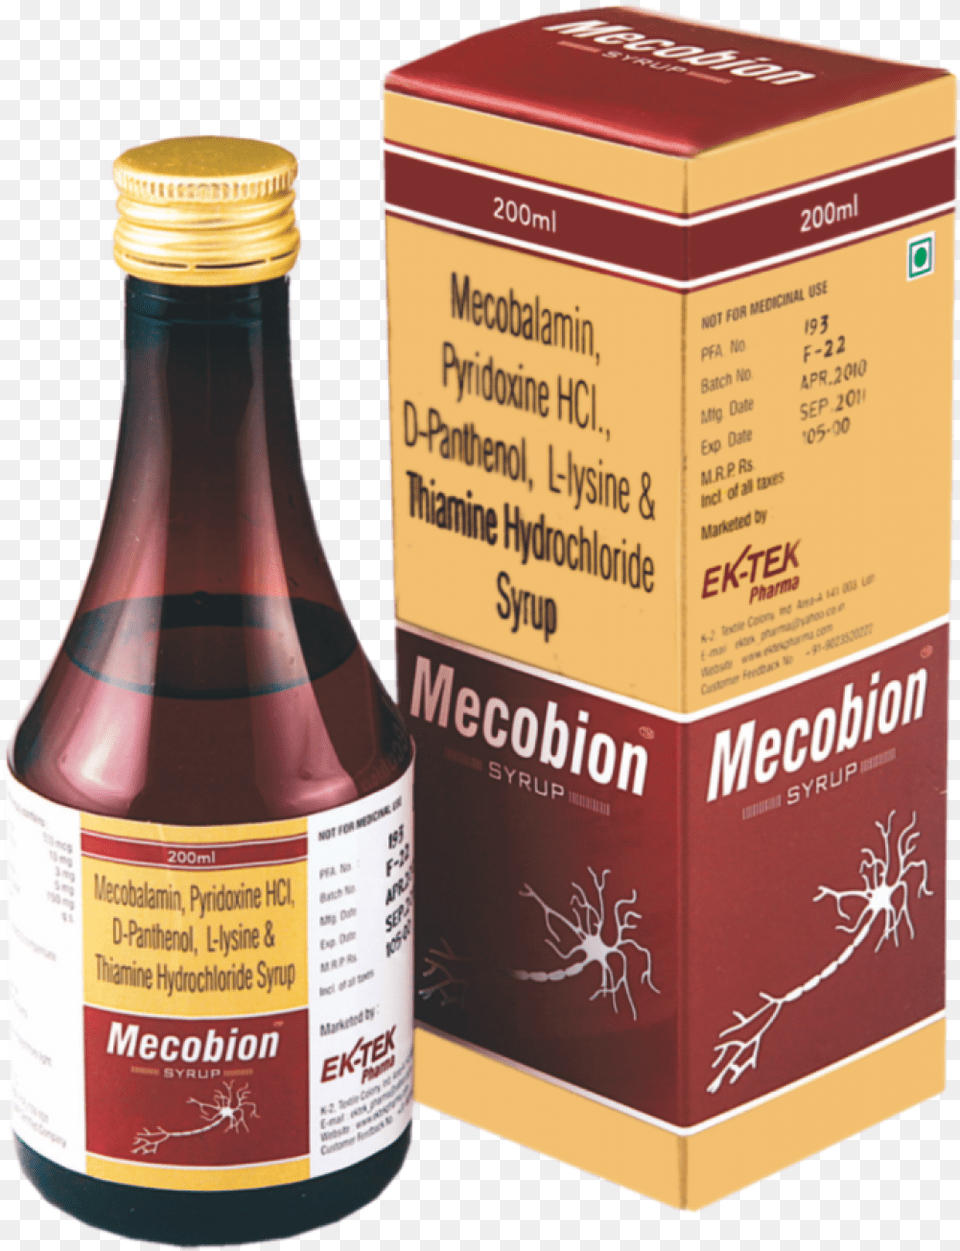 Mecobin Syrup Ek Tek Pharma, Food, Seasoning, Ketchup Free Png